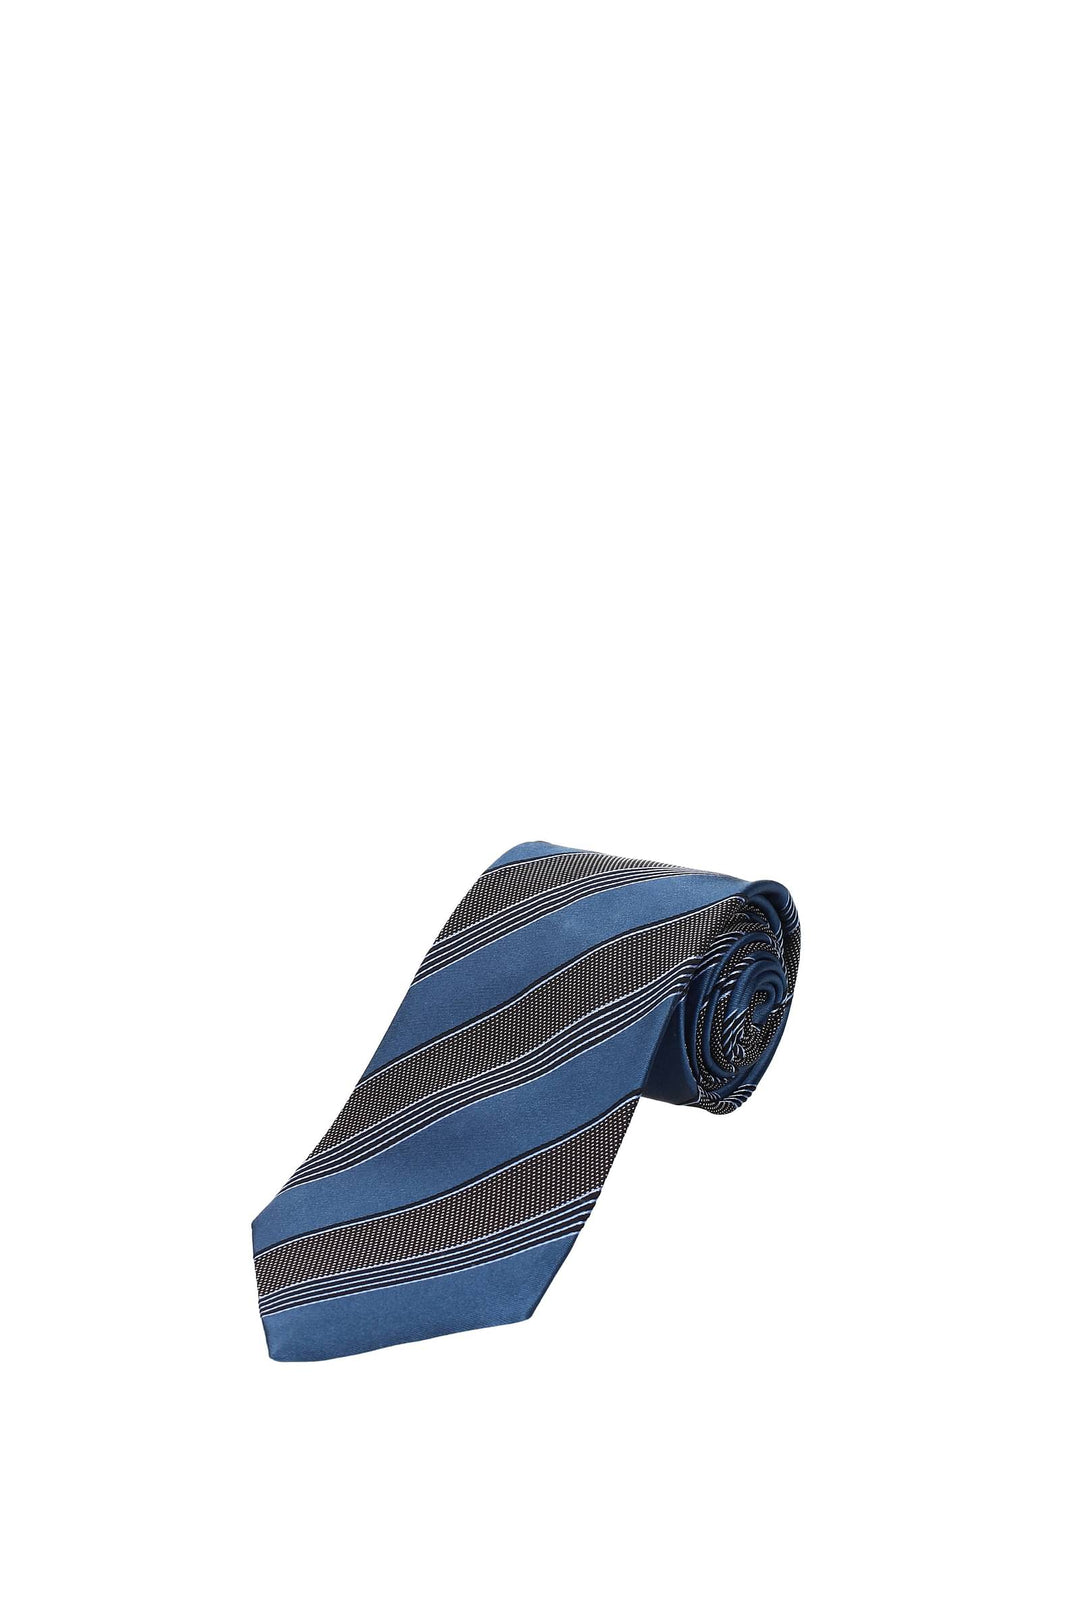 Cravatte Seta Blu Pavone - Zegna - Uomo